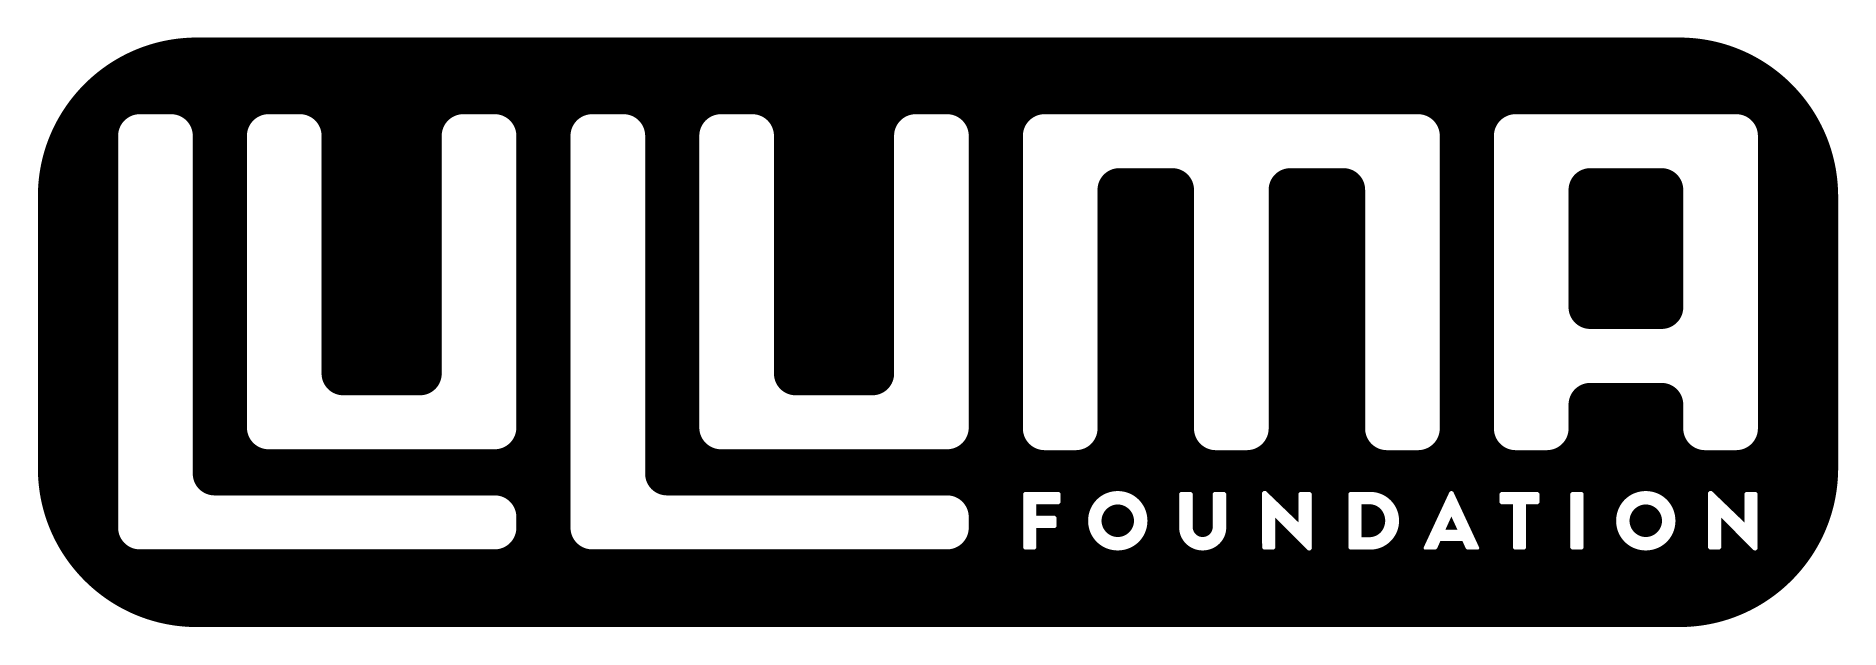 LuluMa_Logo-06.png